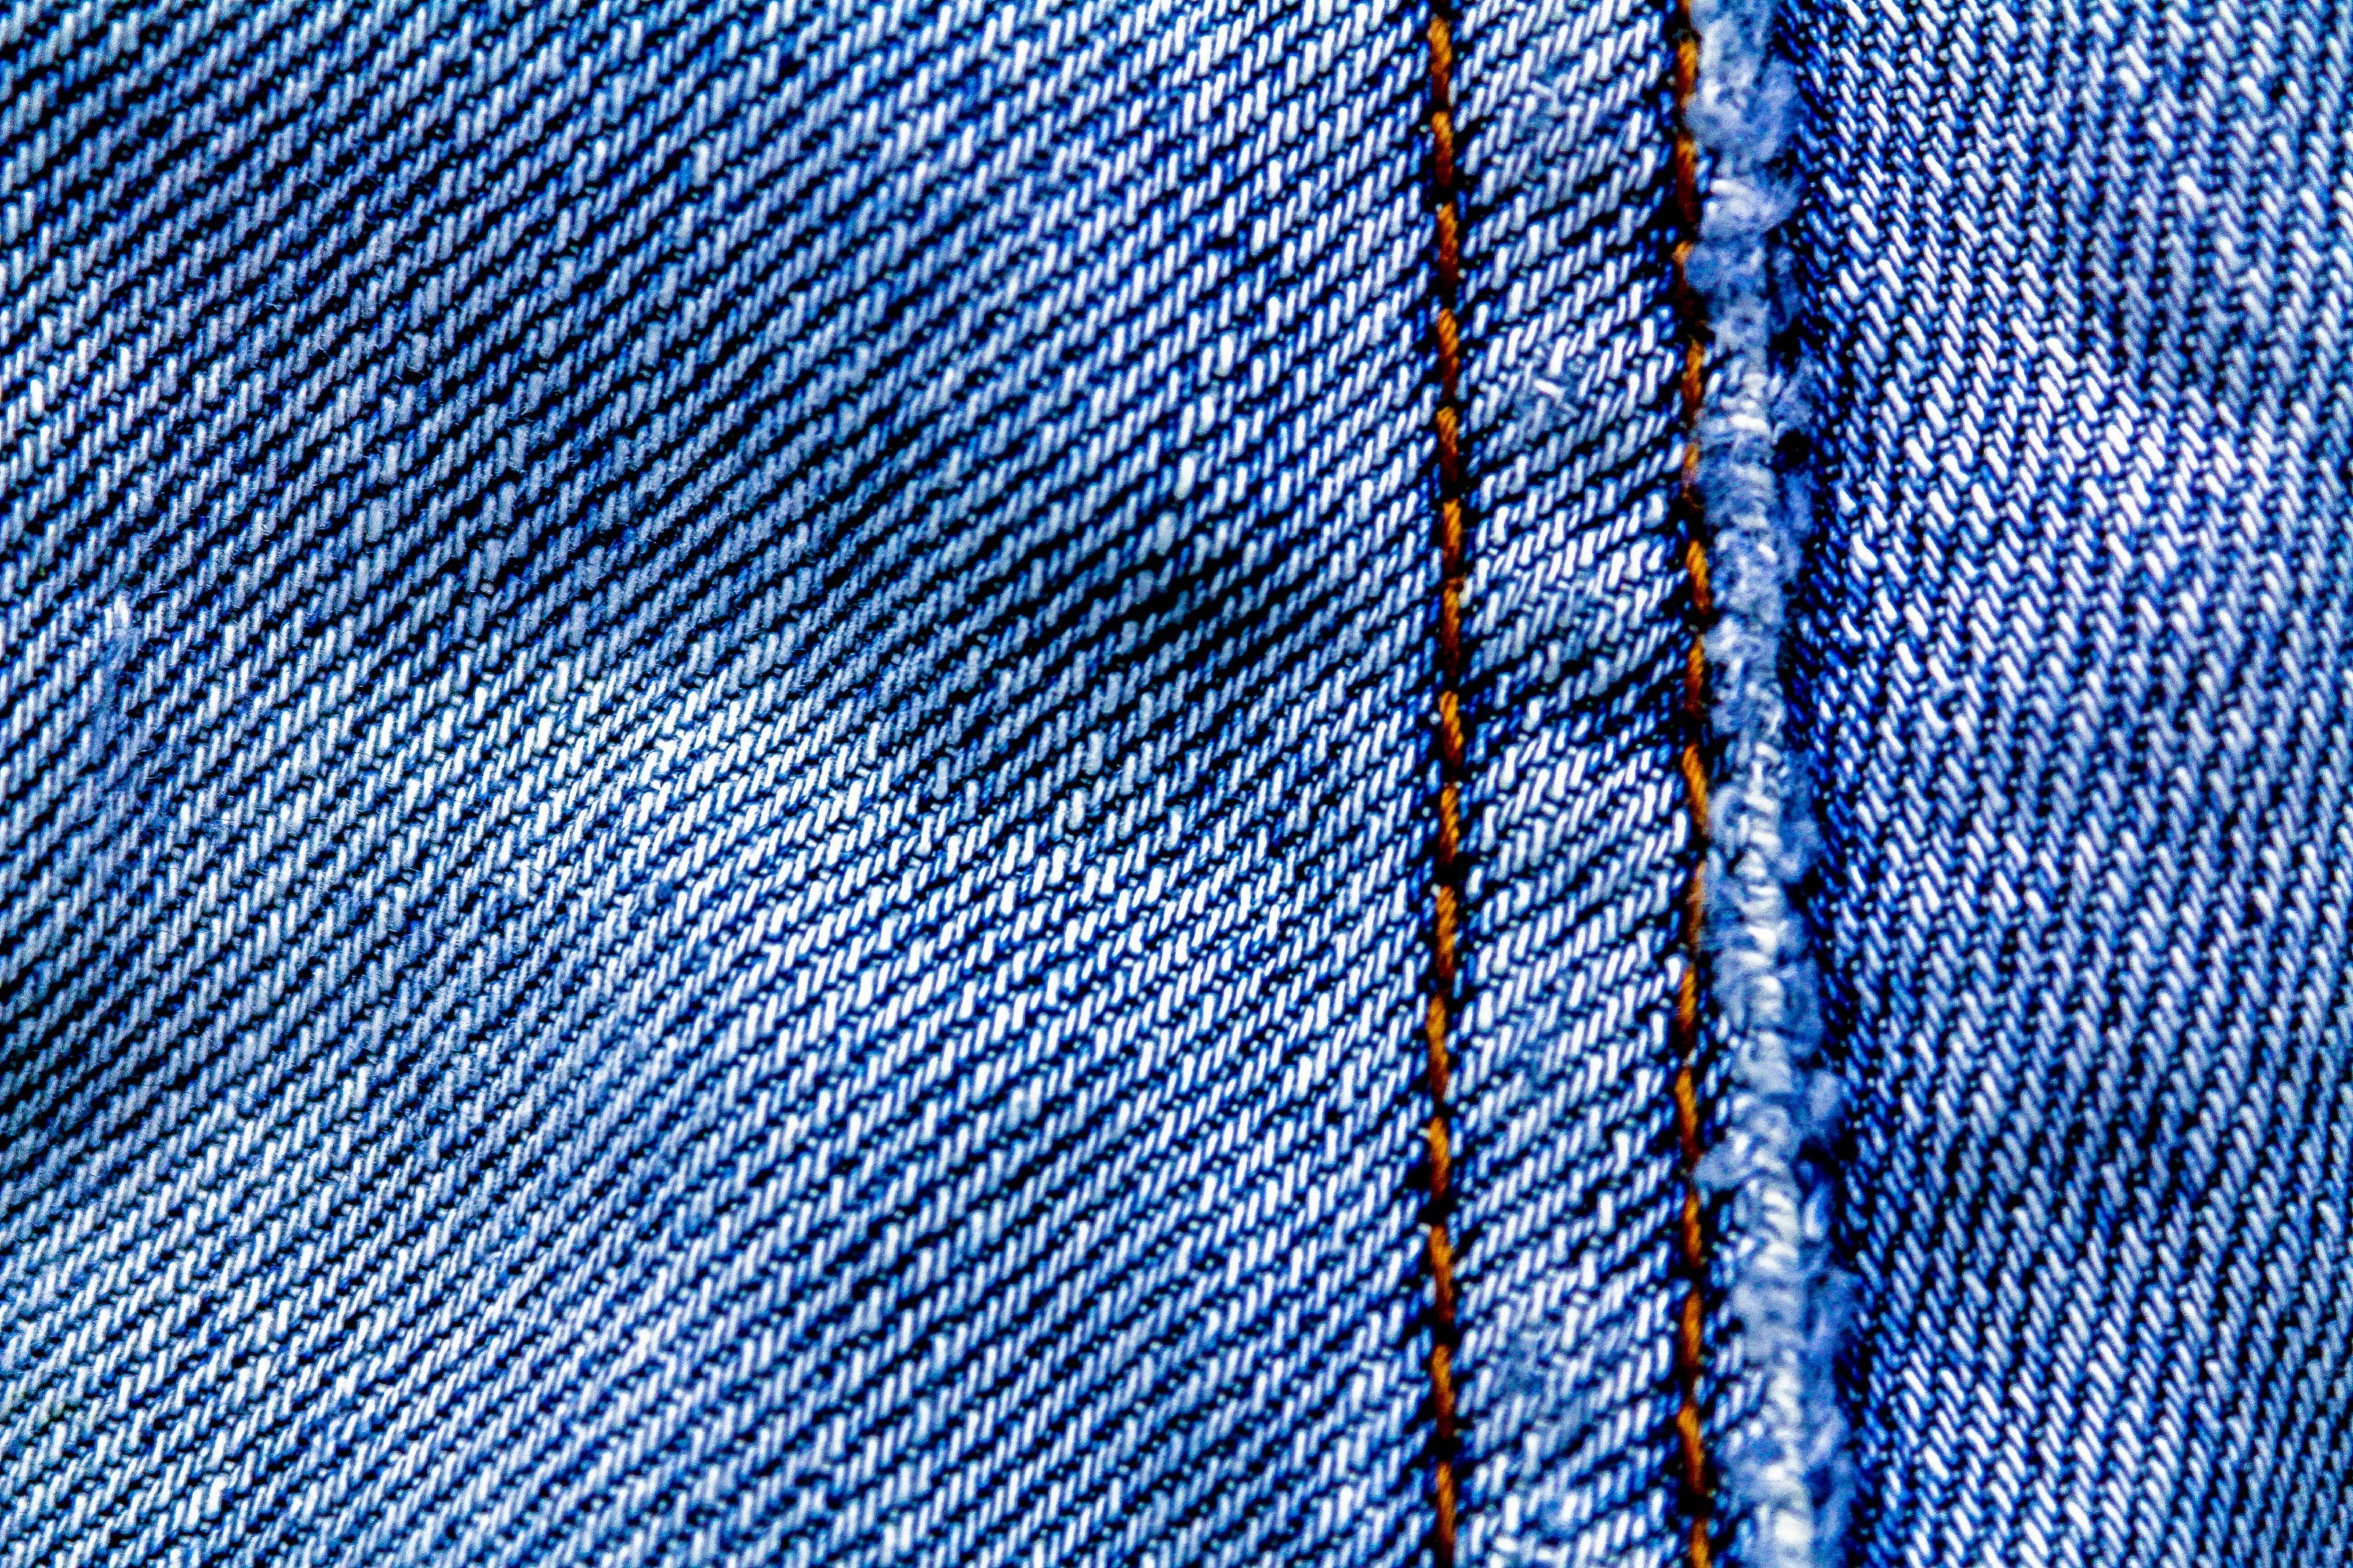 Текстура джинсов. Джинсовая ткань. Фактура джинсовой ткани. Джинсовая ткань деним. Джинсы текстура.